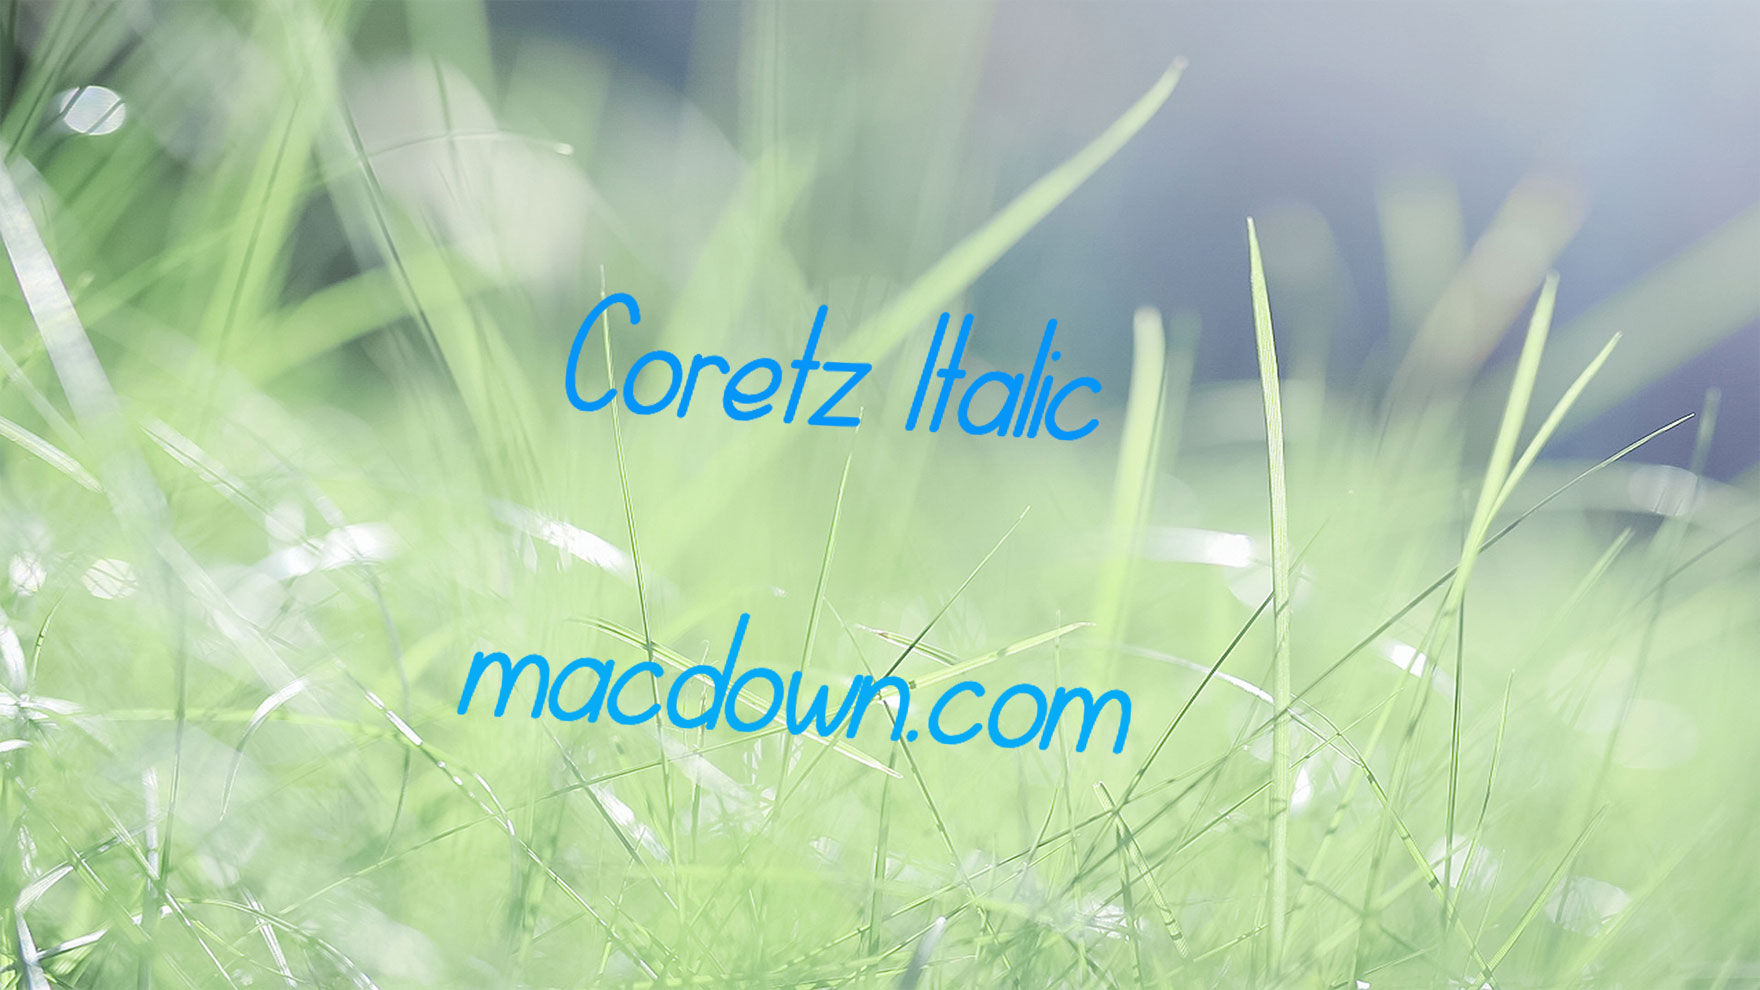 Coretz现代可爱手写字体 for mac